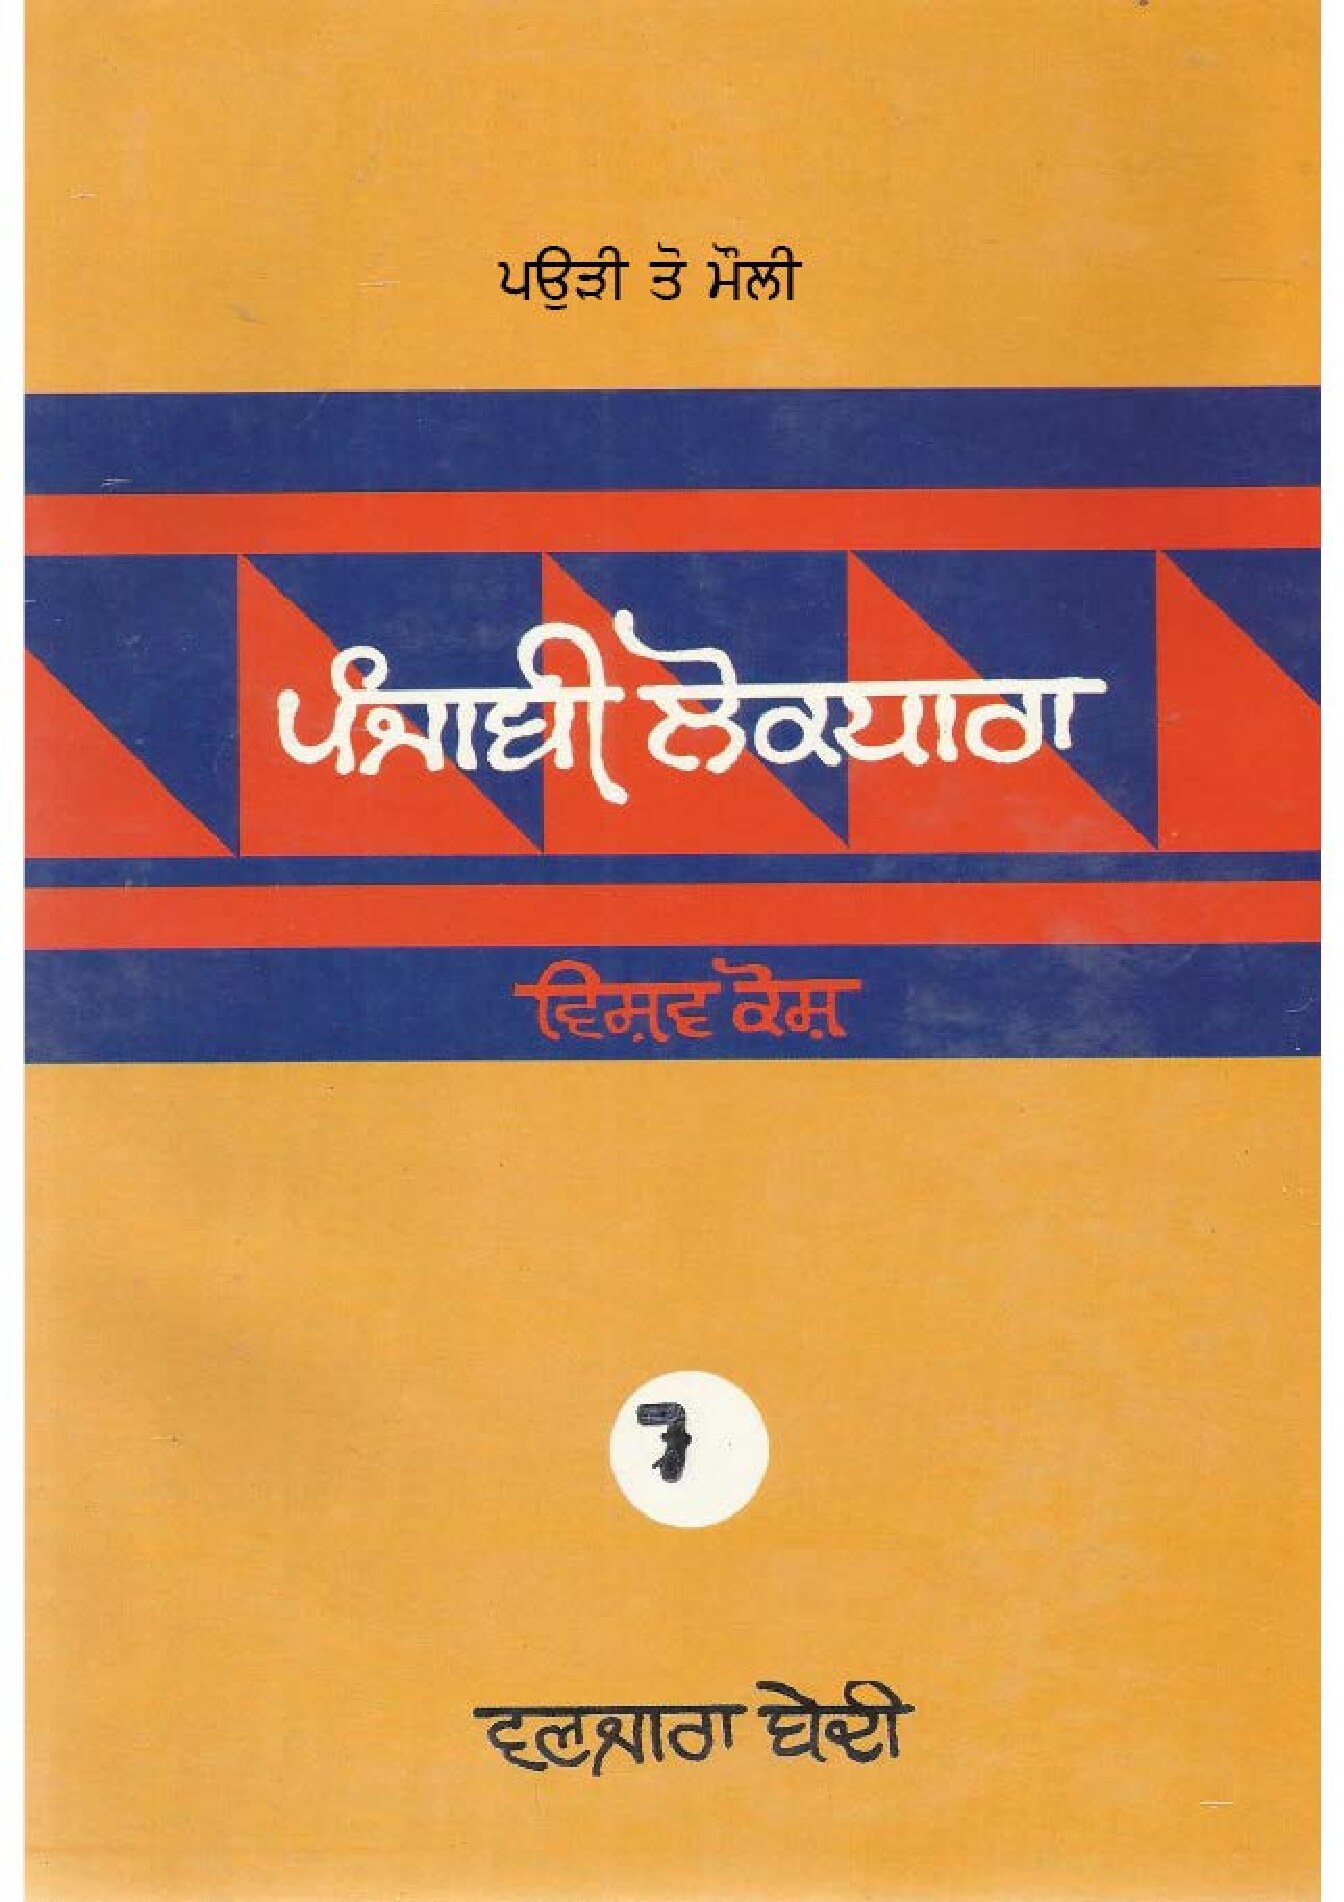 ਪੰਜਾਬੀ ਲੋਕ ਧਾਰਾ - ਵਿਸ਼ਵ ਕੋਸ਼(7) - Punjabi Lok Dhara - Vishav Kosh(7)